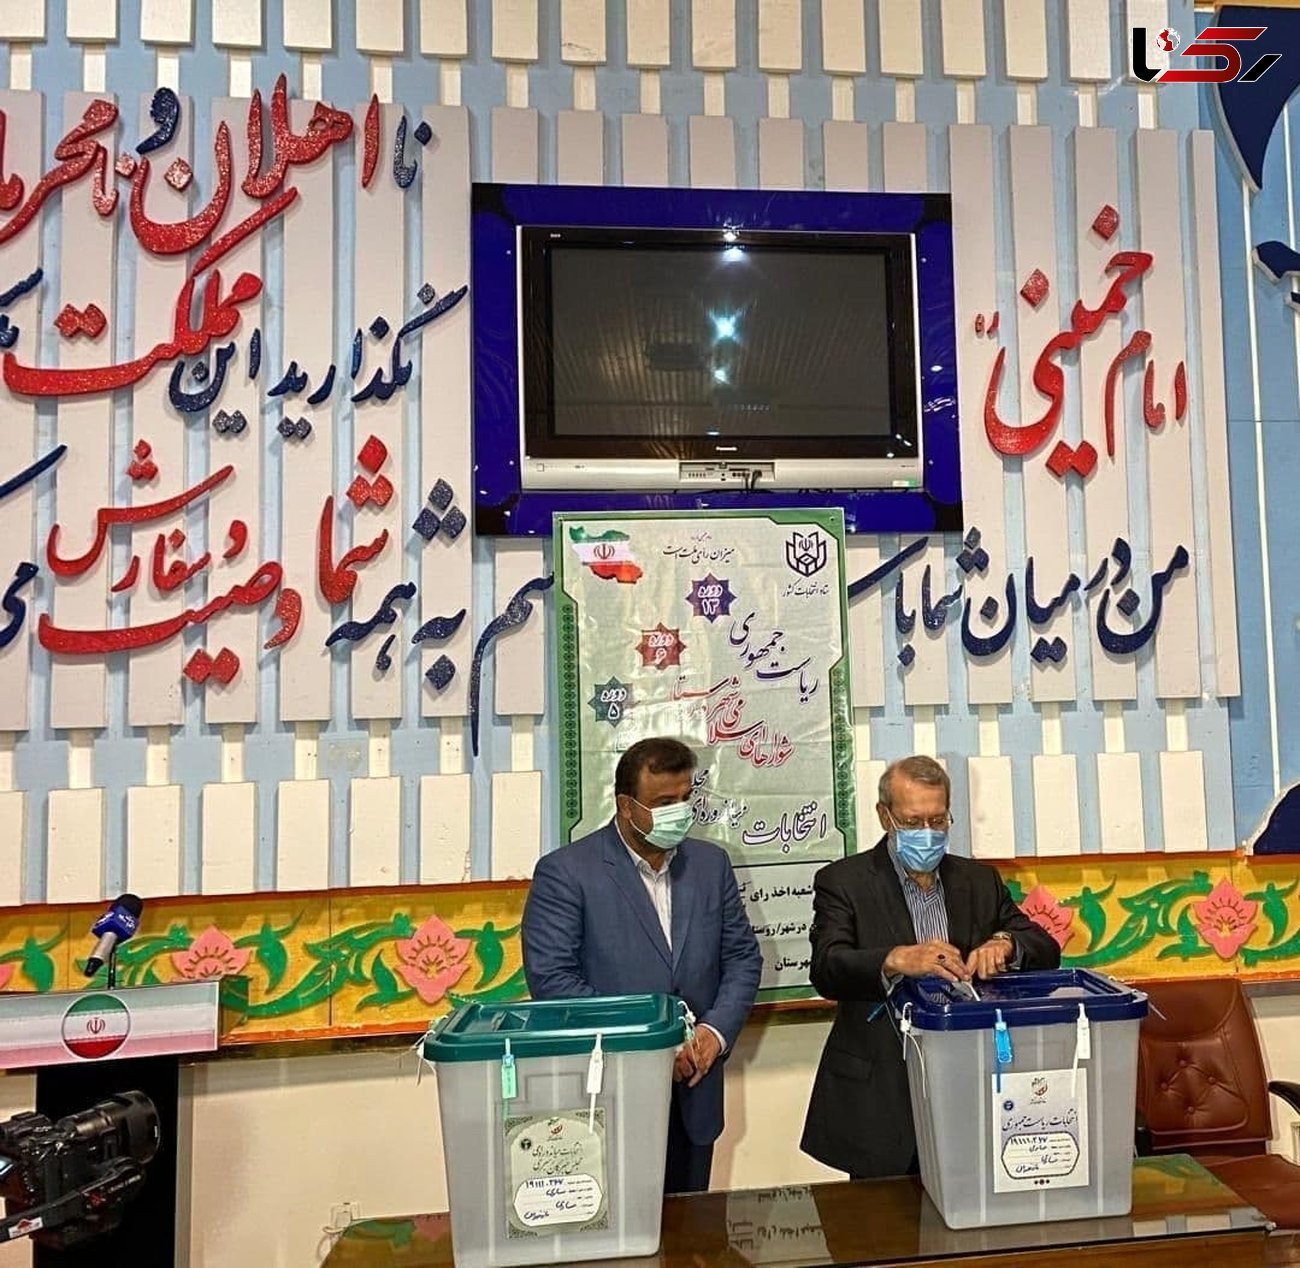 علی لاریجانی در مازندران رای خود را به صندوق انداخت / قهر کردن با صندوق رای معنی ندارد + عکس